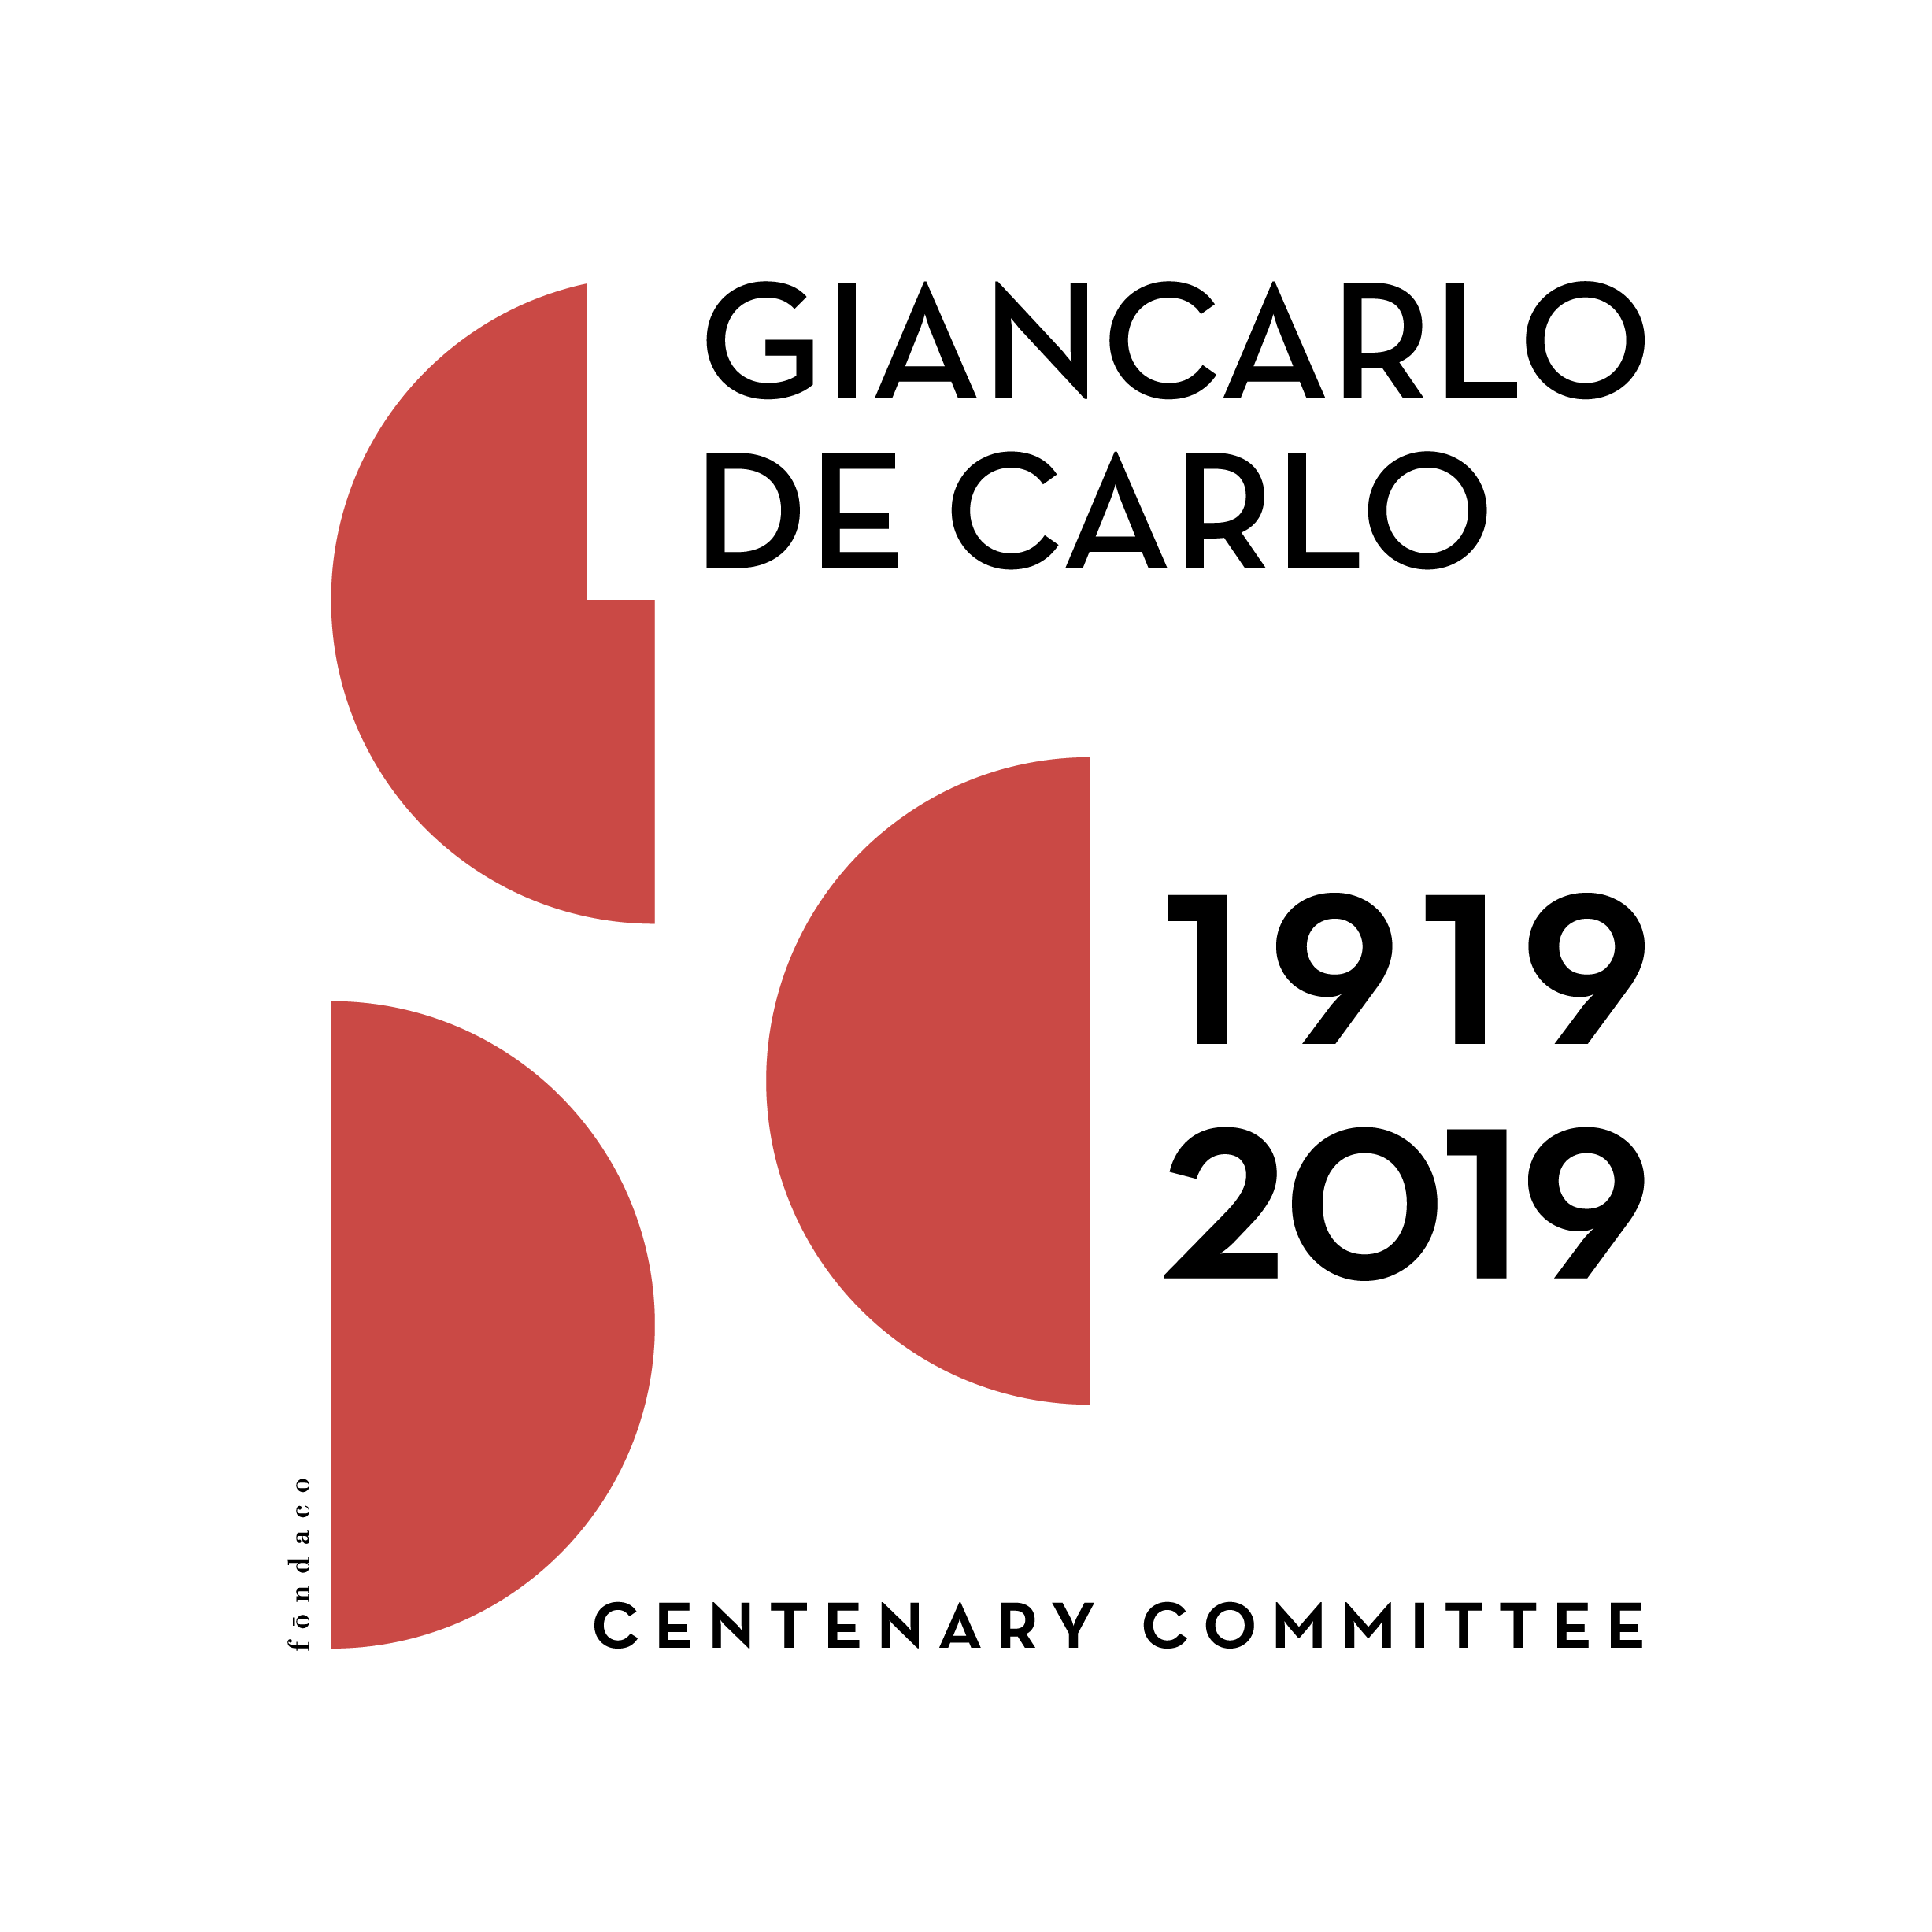 Giancarlo De Carlo centenary